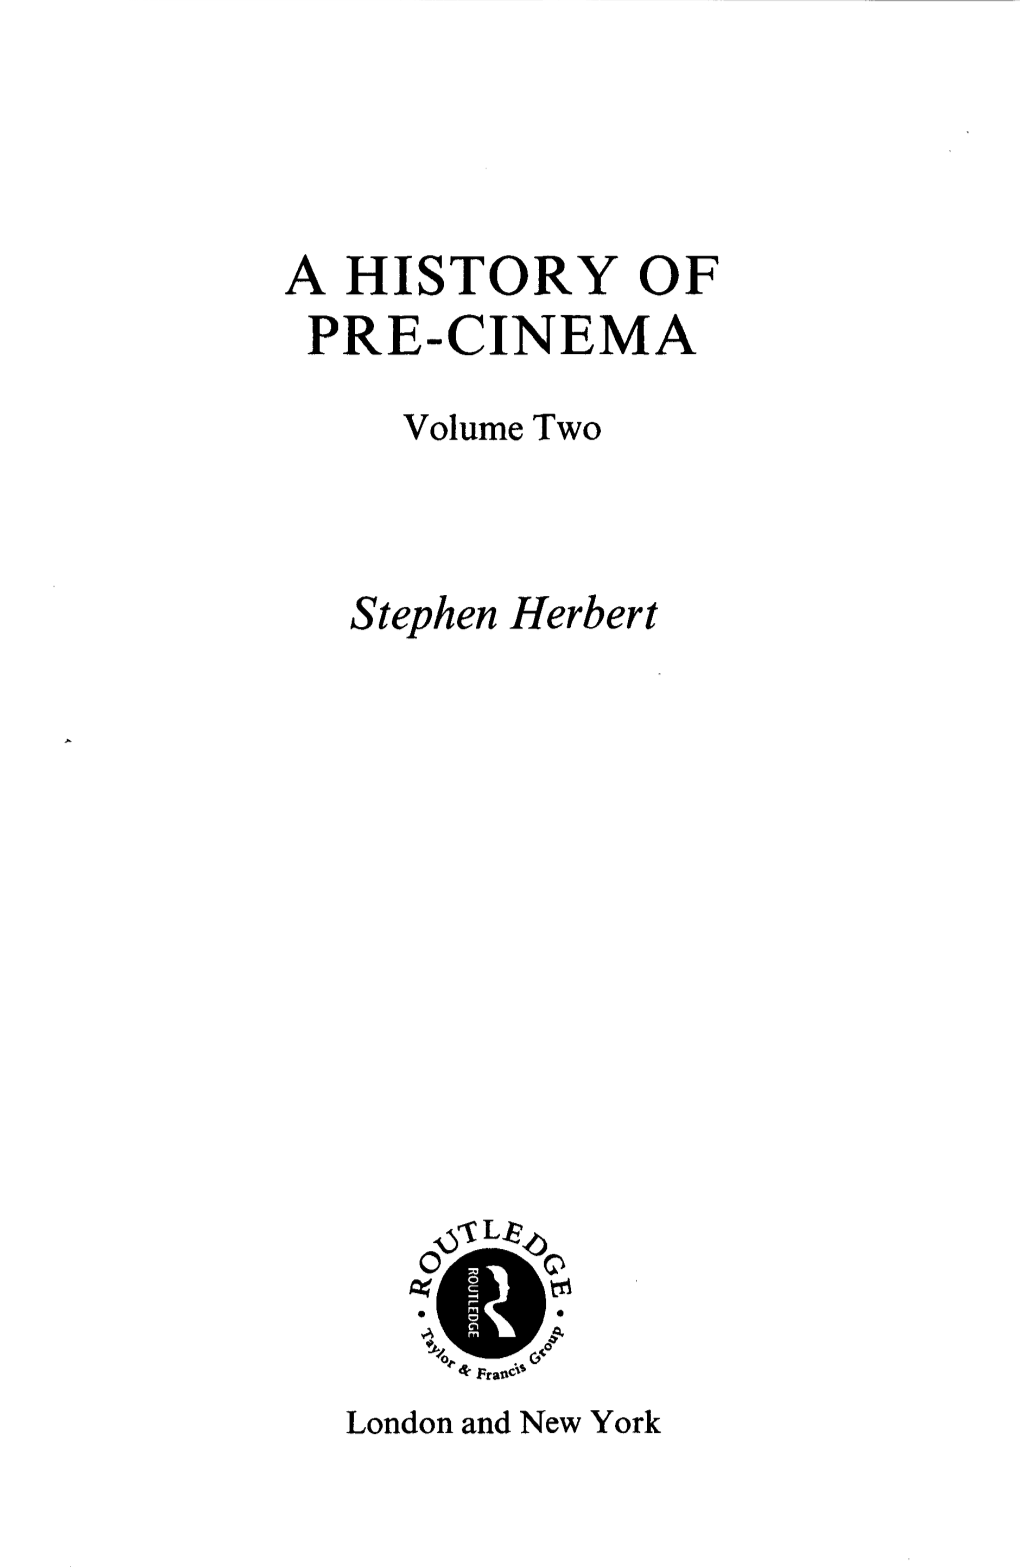 A History of Pre-Cinema